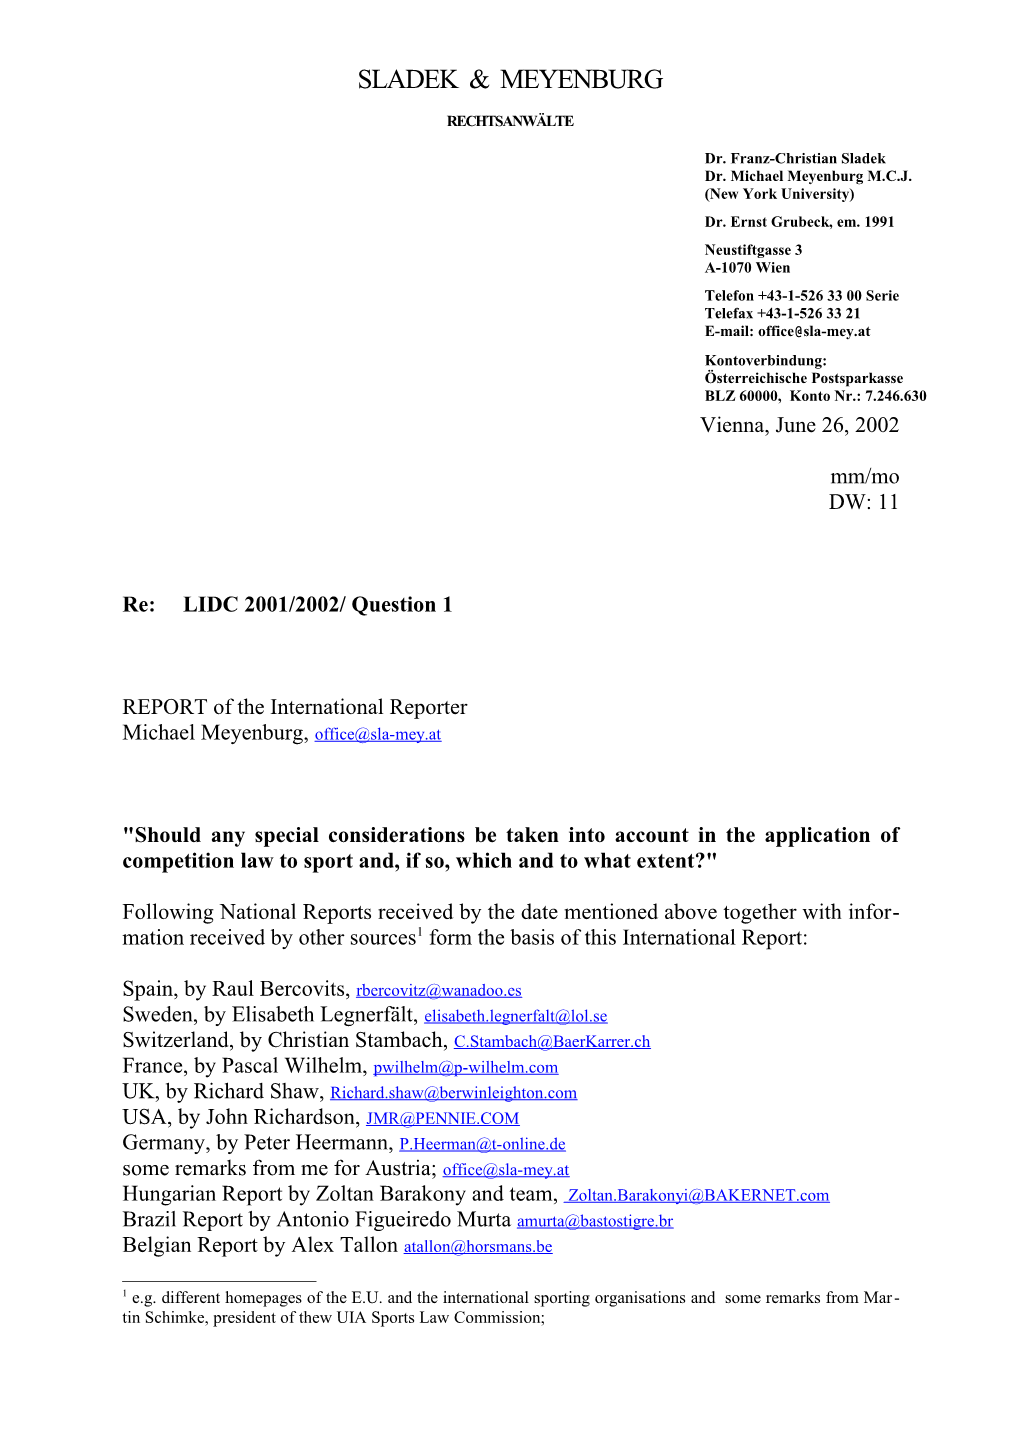 Re: LIDC 2001/2002/ Question 1